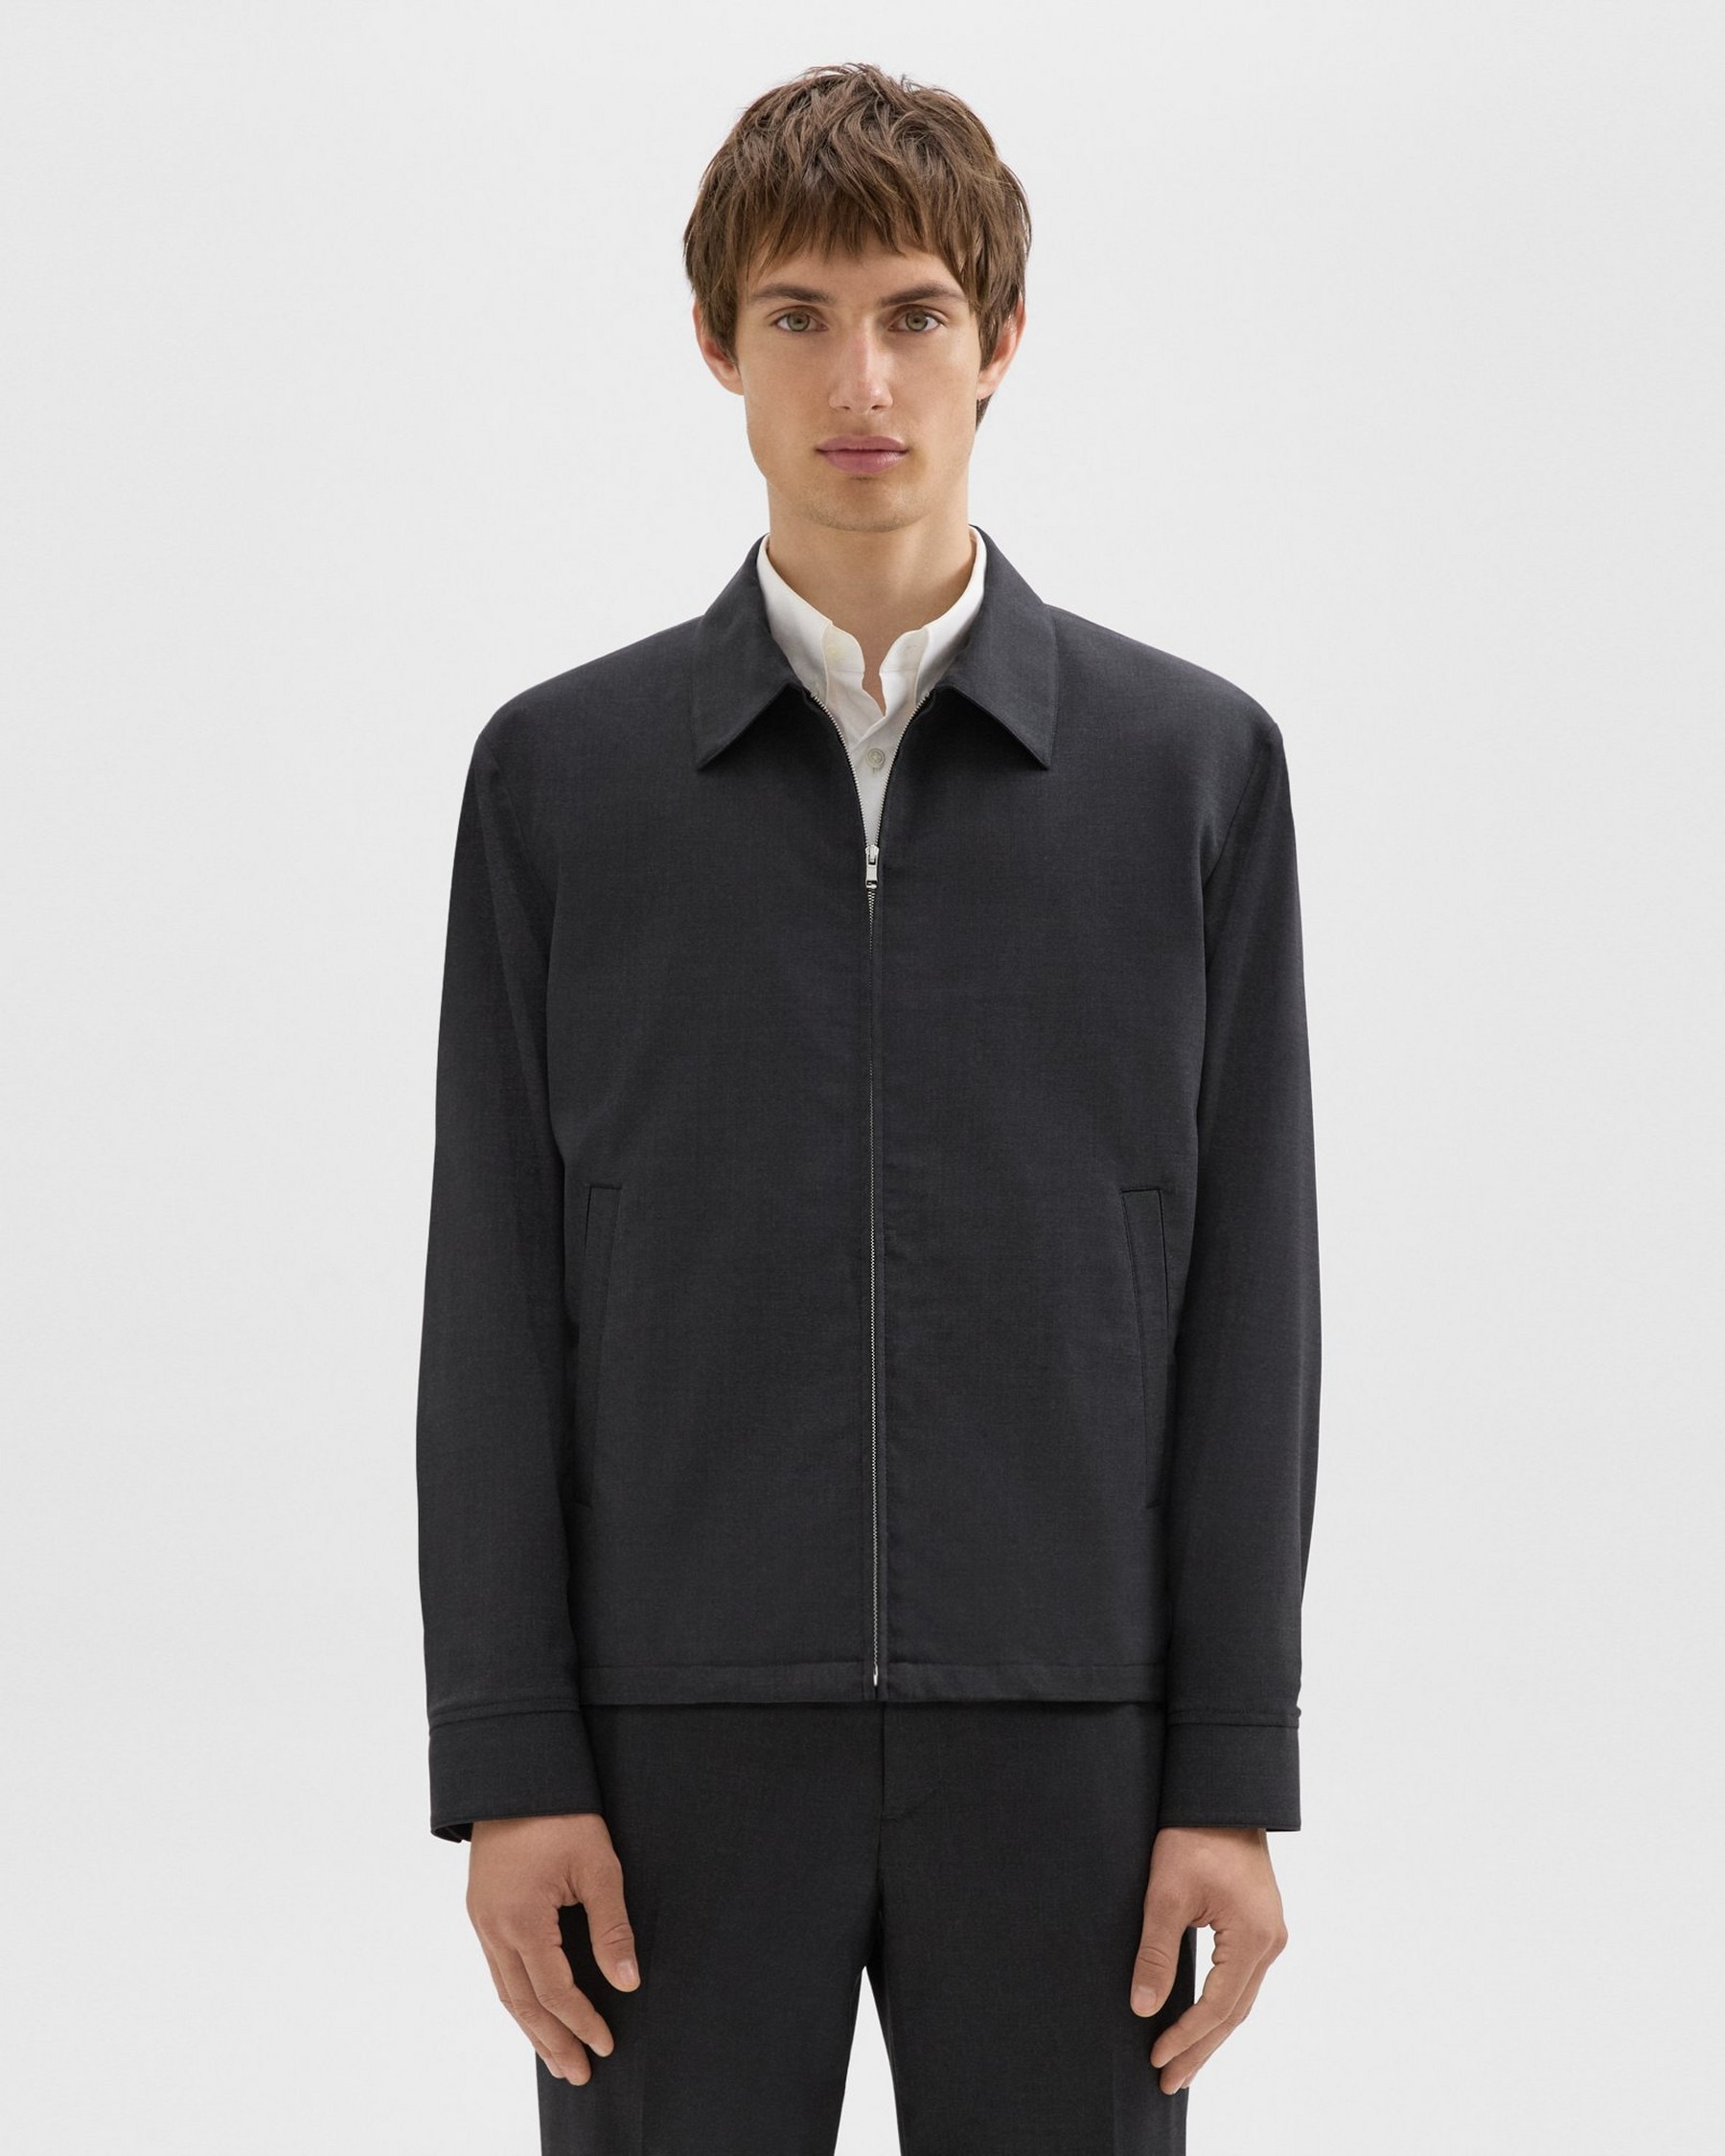 Hazelton Zip Jacket in Stretch Wool